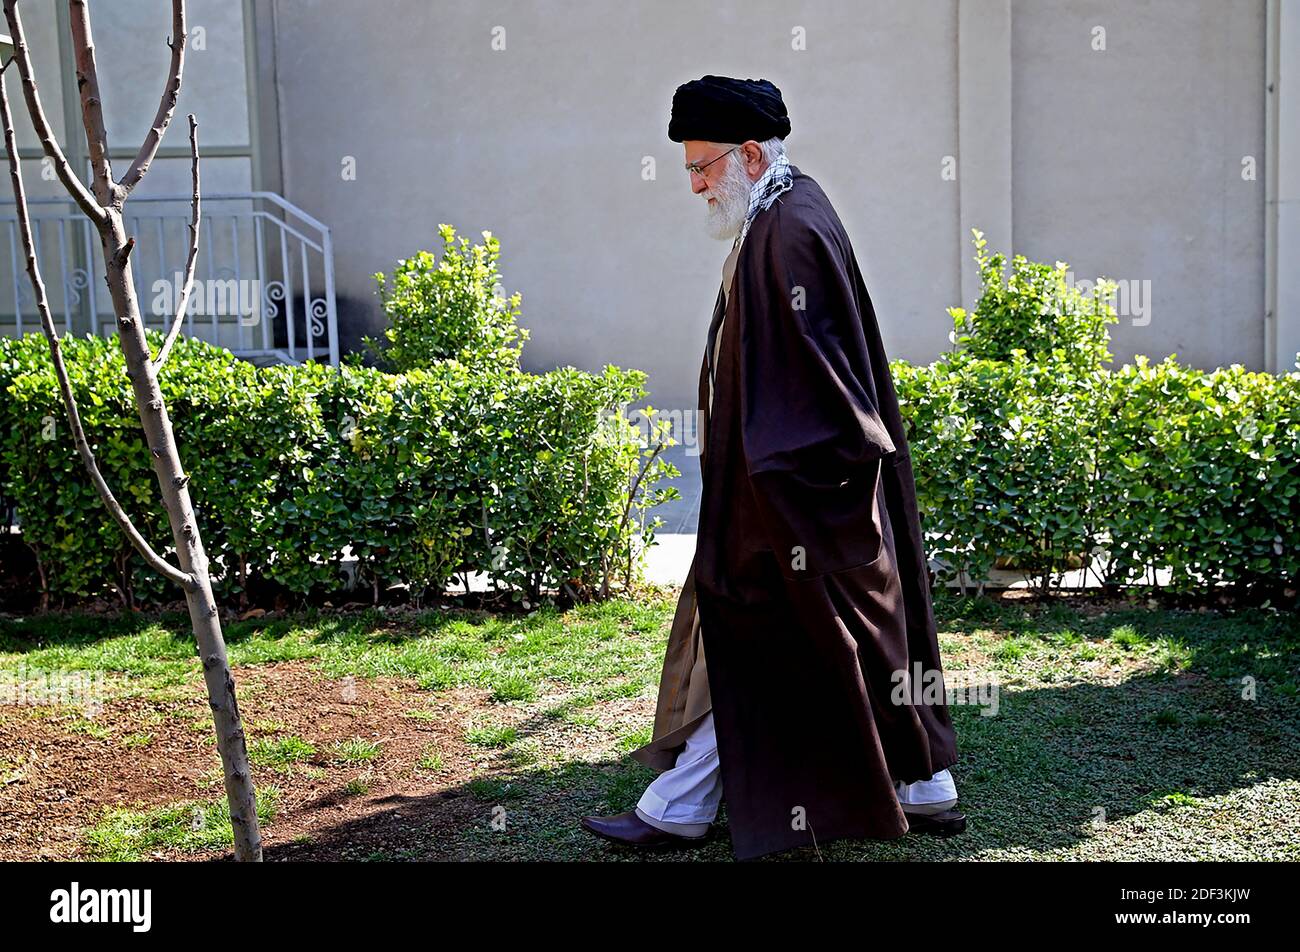 Il leader supremo dell'Iran Ayatollah Ali Khamenei innaffia un albero appena piantato in un giardino durante una cerimonia che segna la settimana delle "risorse naturali" nella capitale Teheran. Khamenei ha chiesto agli iraniani di attenersi alle linee guida per l'igiene per impedire la diffusione del nuovo coronavirus. 'Le linee guida sanitarie per prevenire l'infezione da questo virus dovrebbero essere osservate,' ha detto sulla televisione di stato mentre indossava guanti come ha piantato un albero. Il leader supremo ha affermato che l'Iran era trasparente con i suoi dati sull'epidemia e ha accusato altri paesi di cercare di nasconderli. Teheran, Iran, marzo Foto Stock